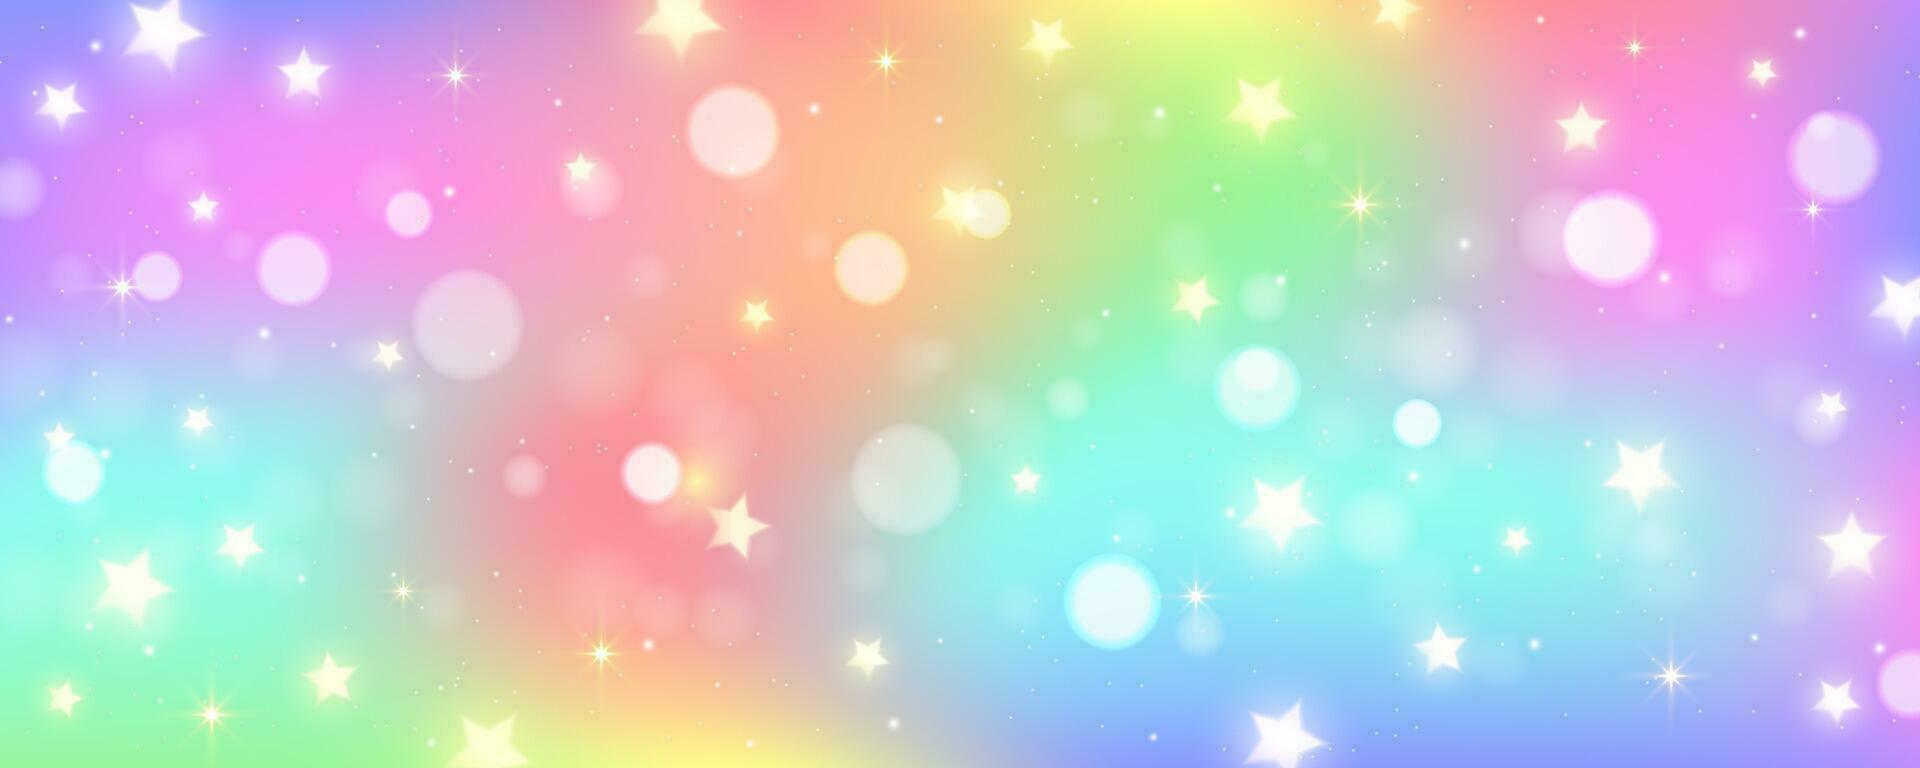 arcobaleno unicorno sfondo. pastello acquerello cielo con luccichio stelle e bokeh. fantasia galassia con olografico struttura. Magia marmo spazio. vettore